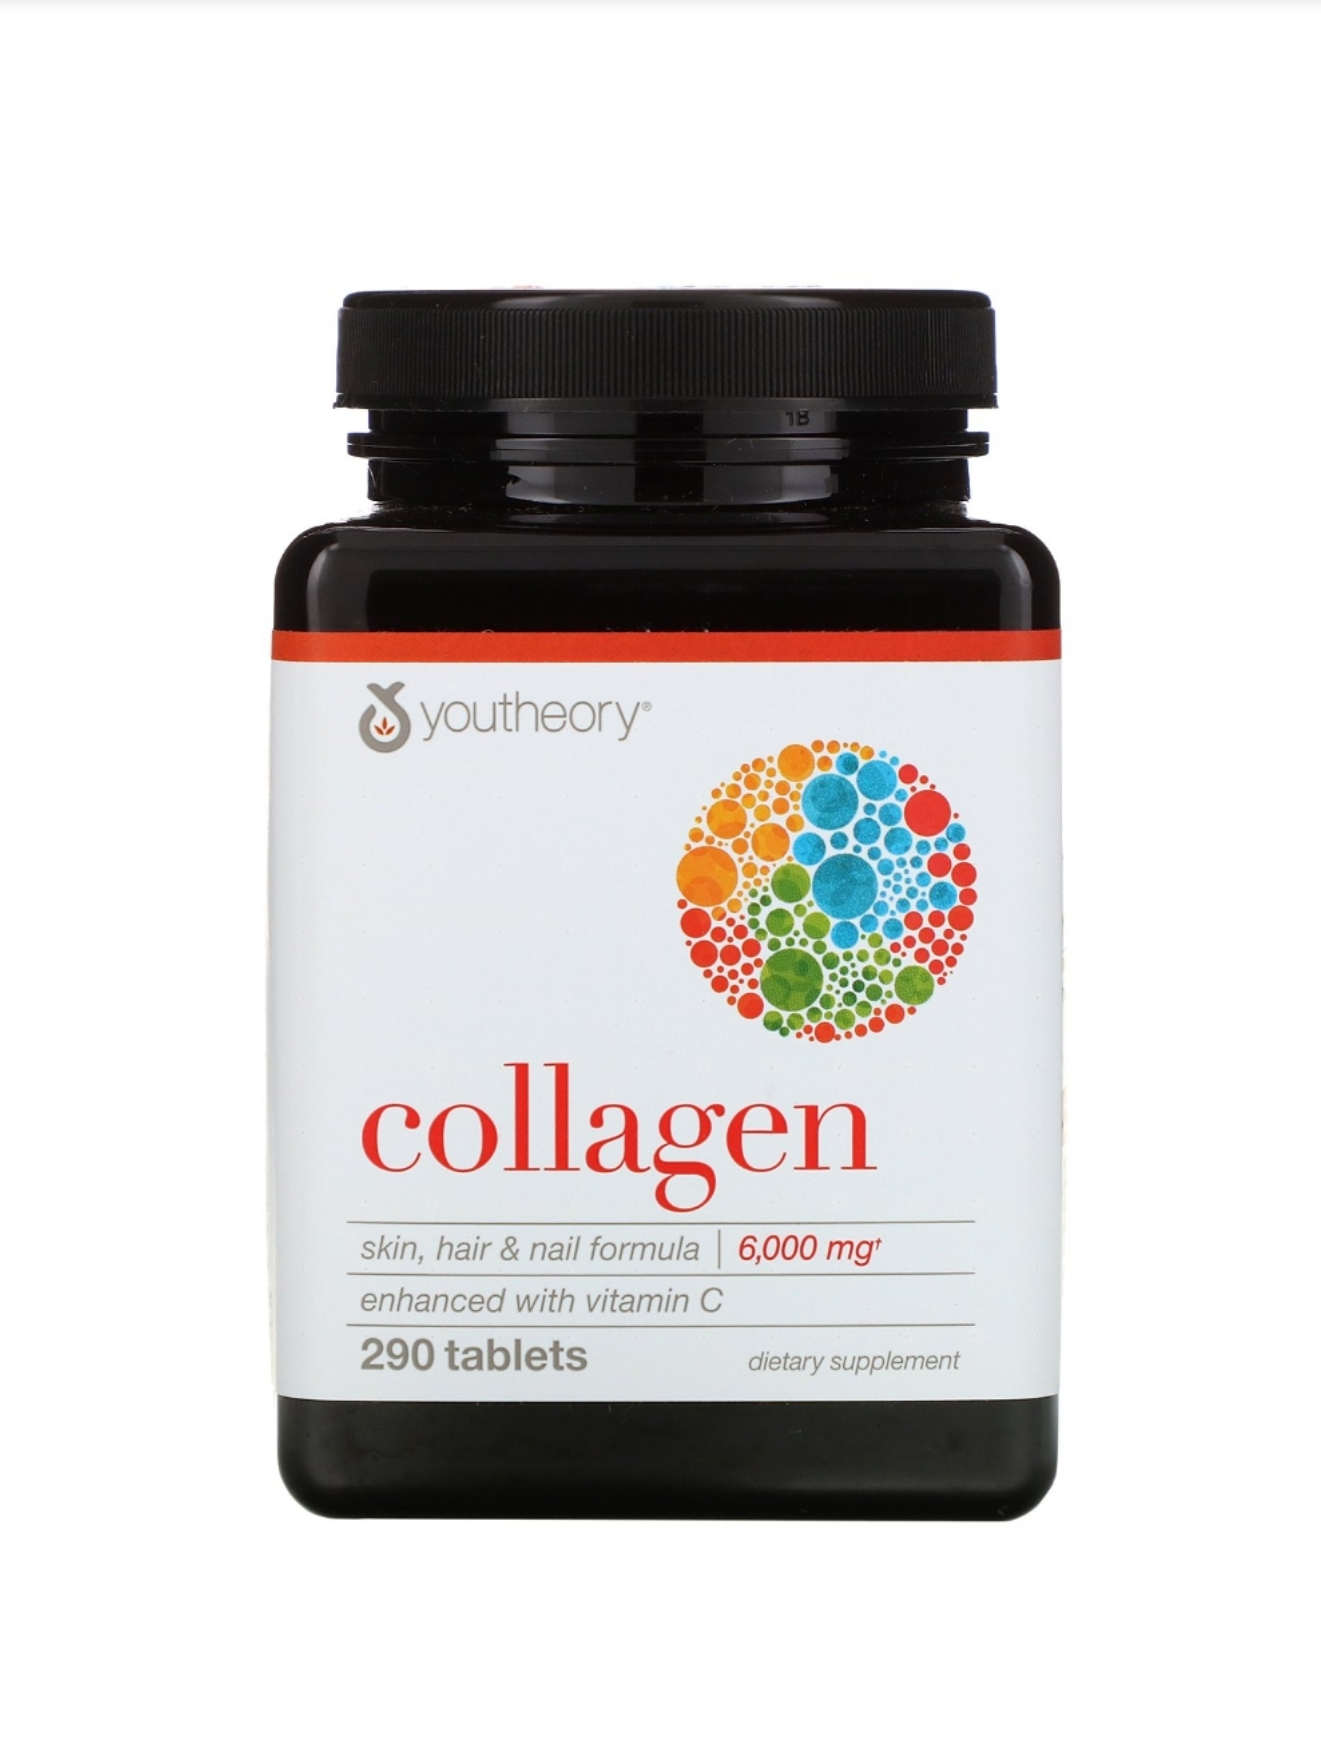 Youtheory Collagen เพื่อสุขภาพ ผิว(ลดกระ ฝ้า) + กระดูกอ่อนข้อต่อ(ลดการเสียดสีของข้อต่อกระดูกต่างๆ) + ผม(ไม่ร่วง,หนา,ดกขึ้น) + เล็บ : คอลลาเจน Type 1, 2 & 3 + 18 amino acids